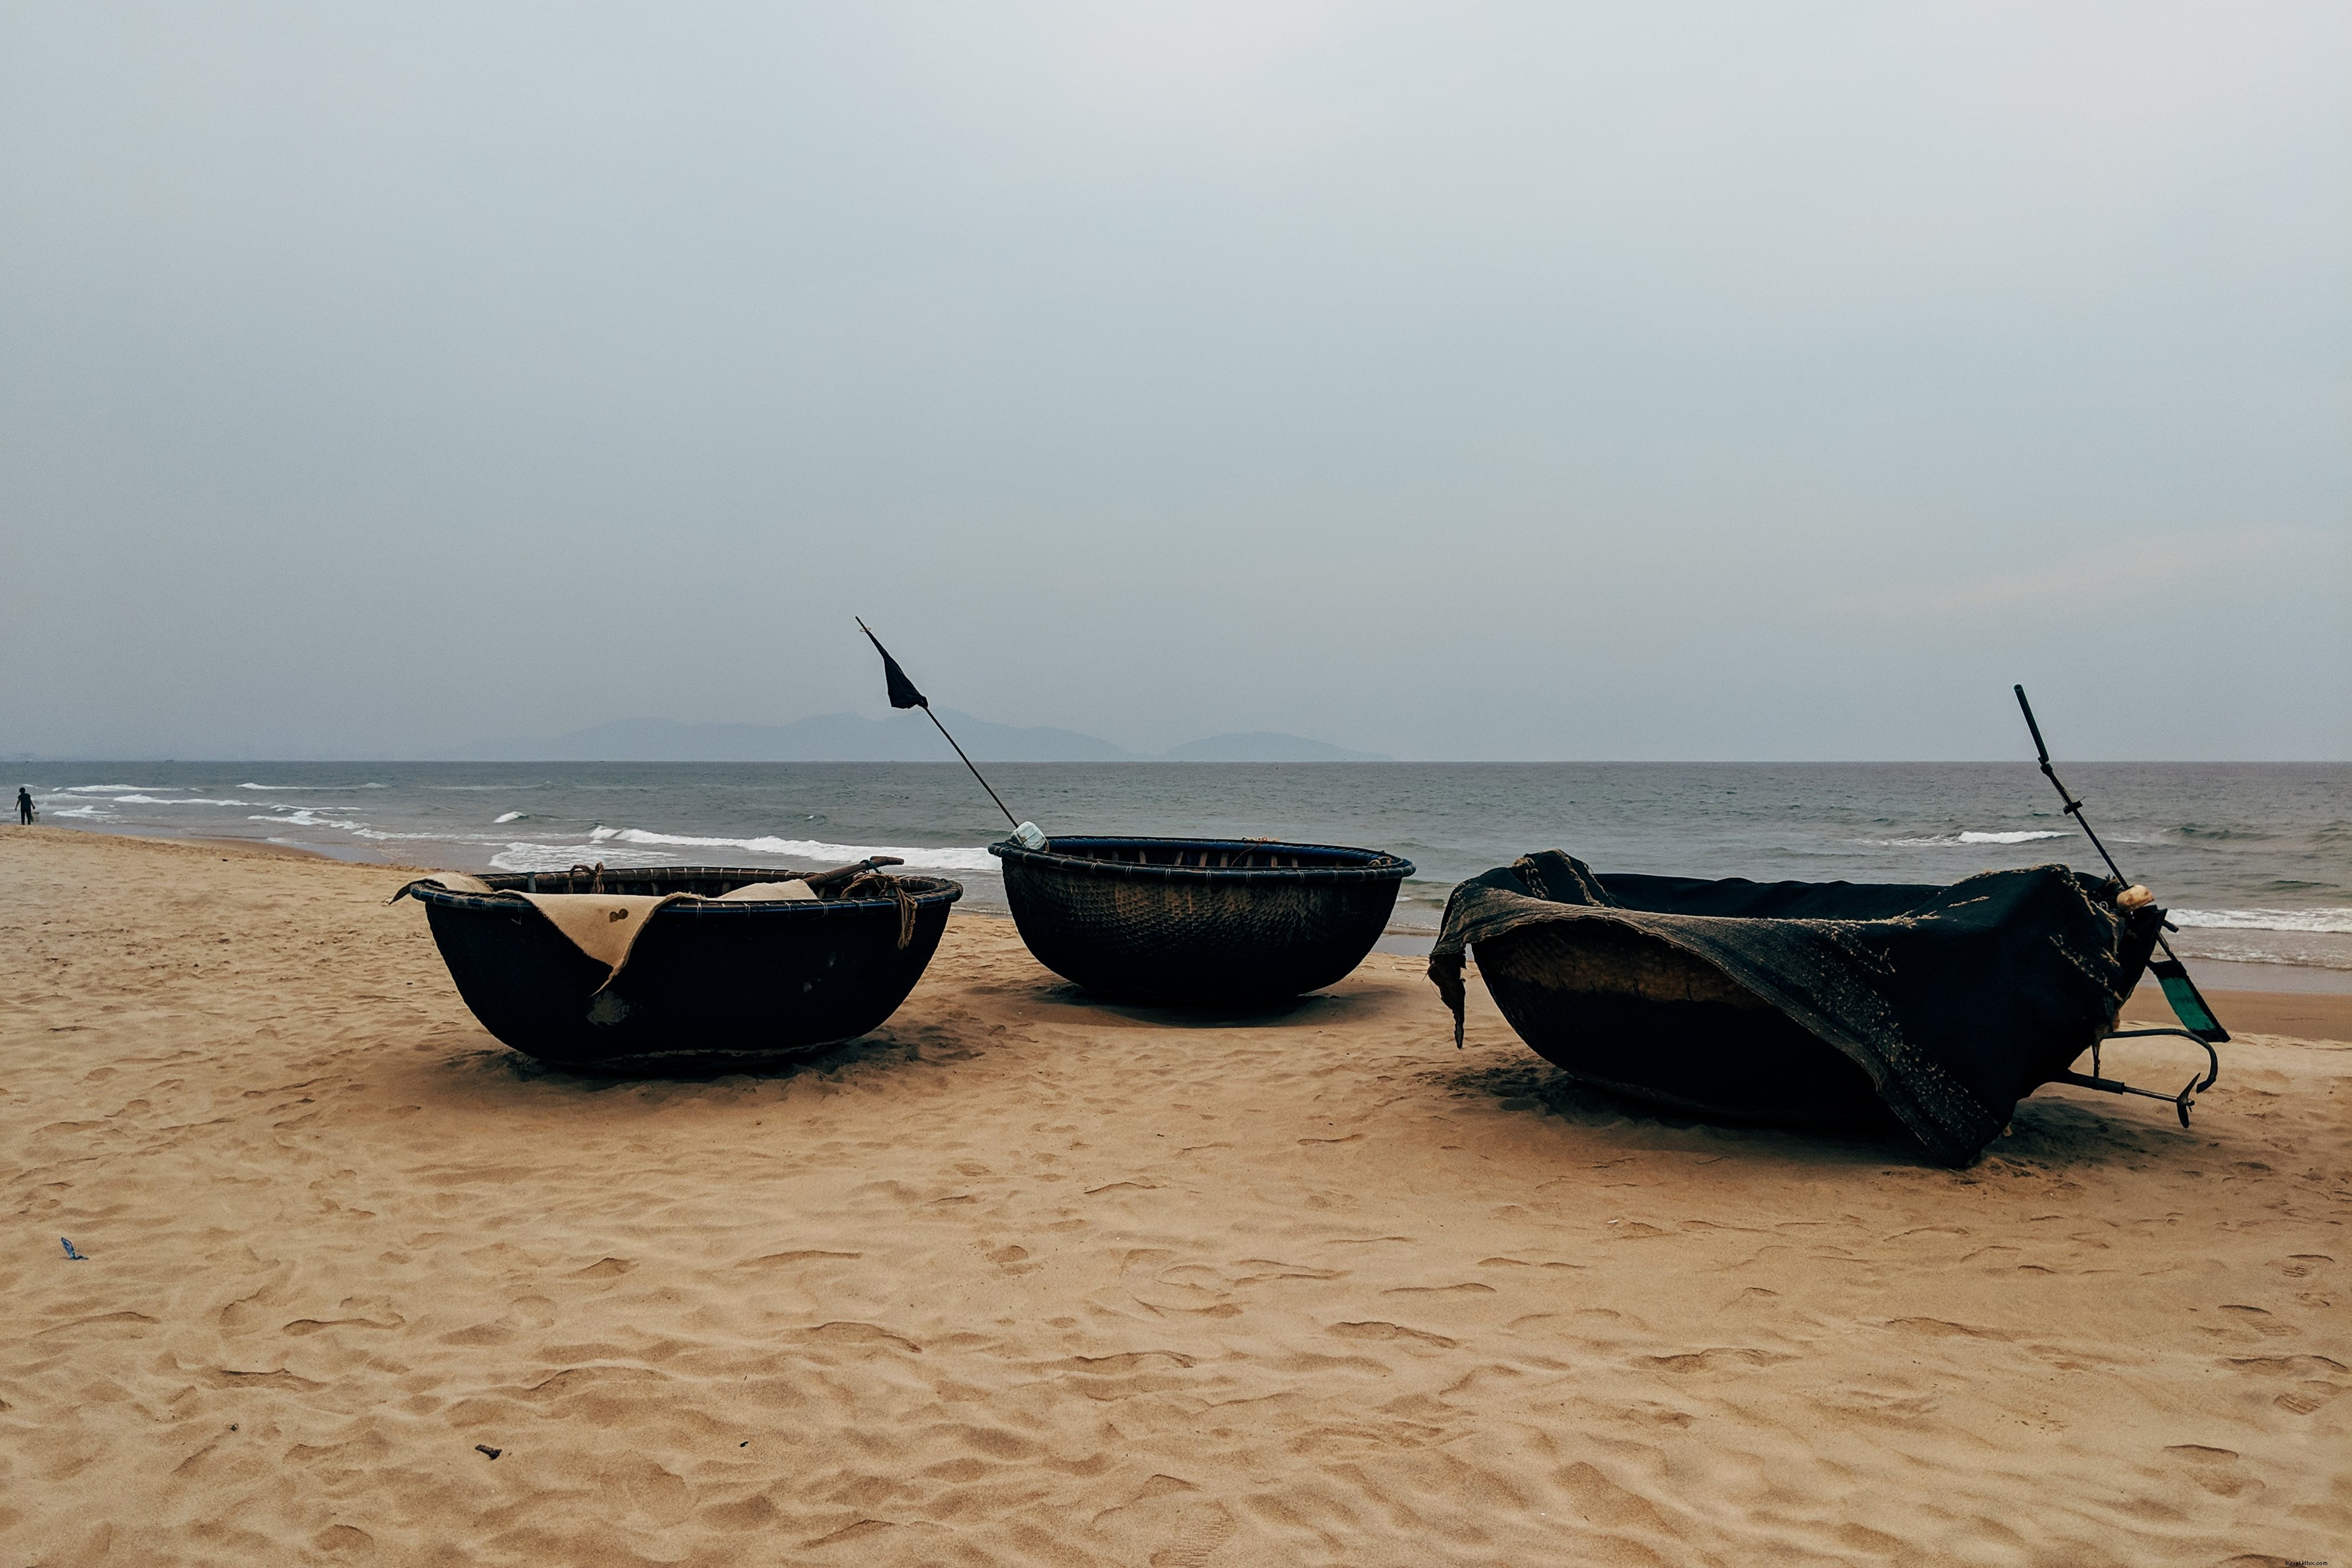 Coracle barche in una spiaggia foto 